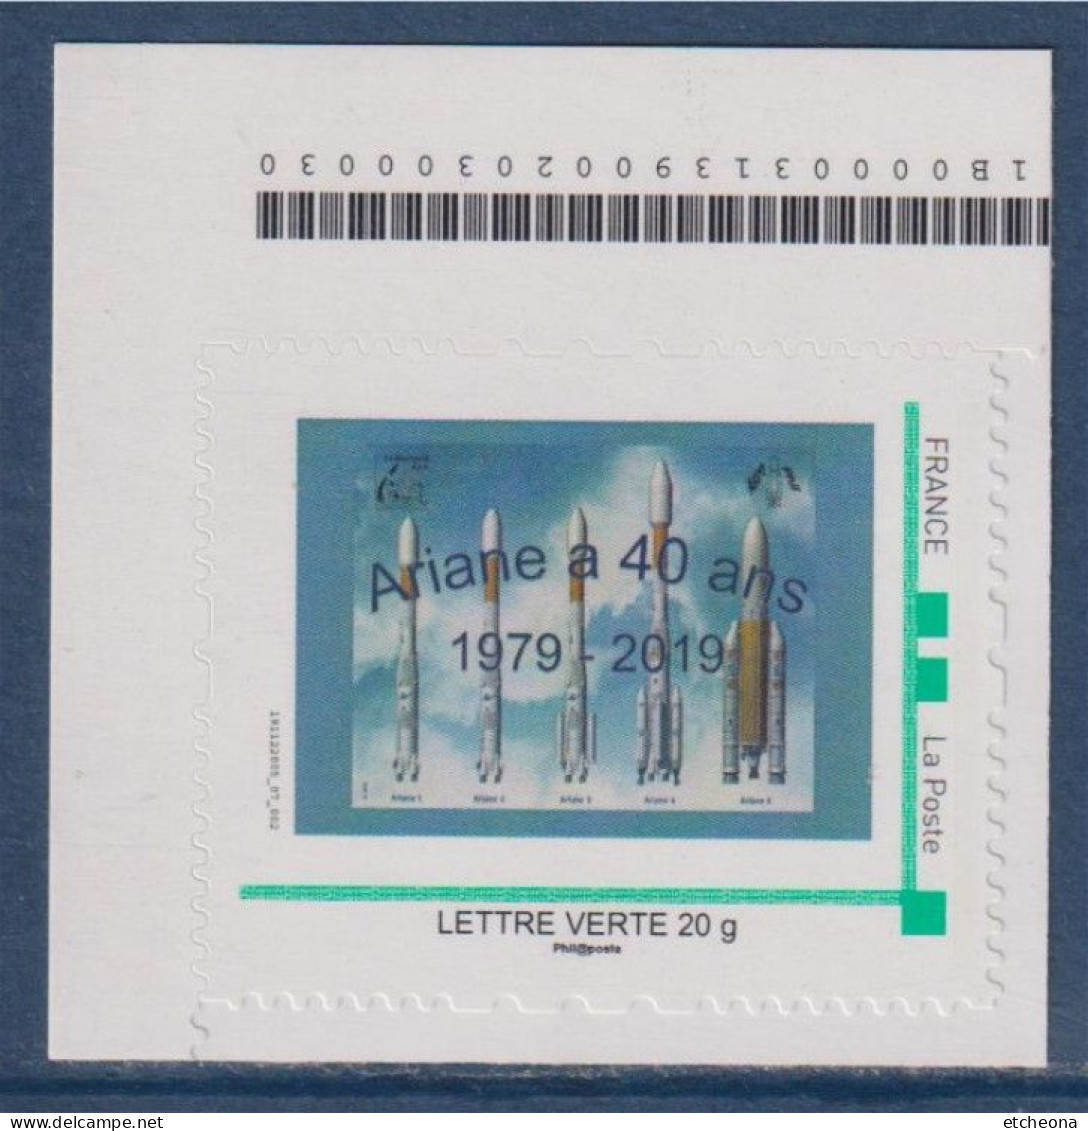 Ariane A 40 Ans 1979-2019 Adhésif TVP LV Coin De Feuille Numéroté 191122005_07_002 Sur Timbres - Unused Stamps